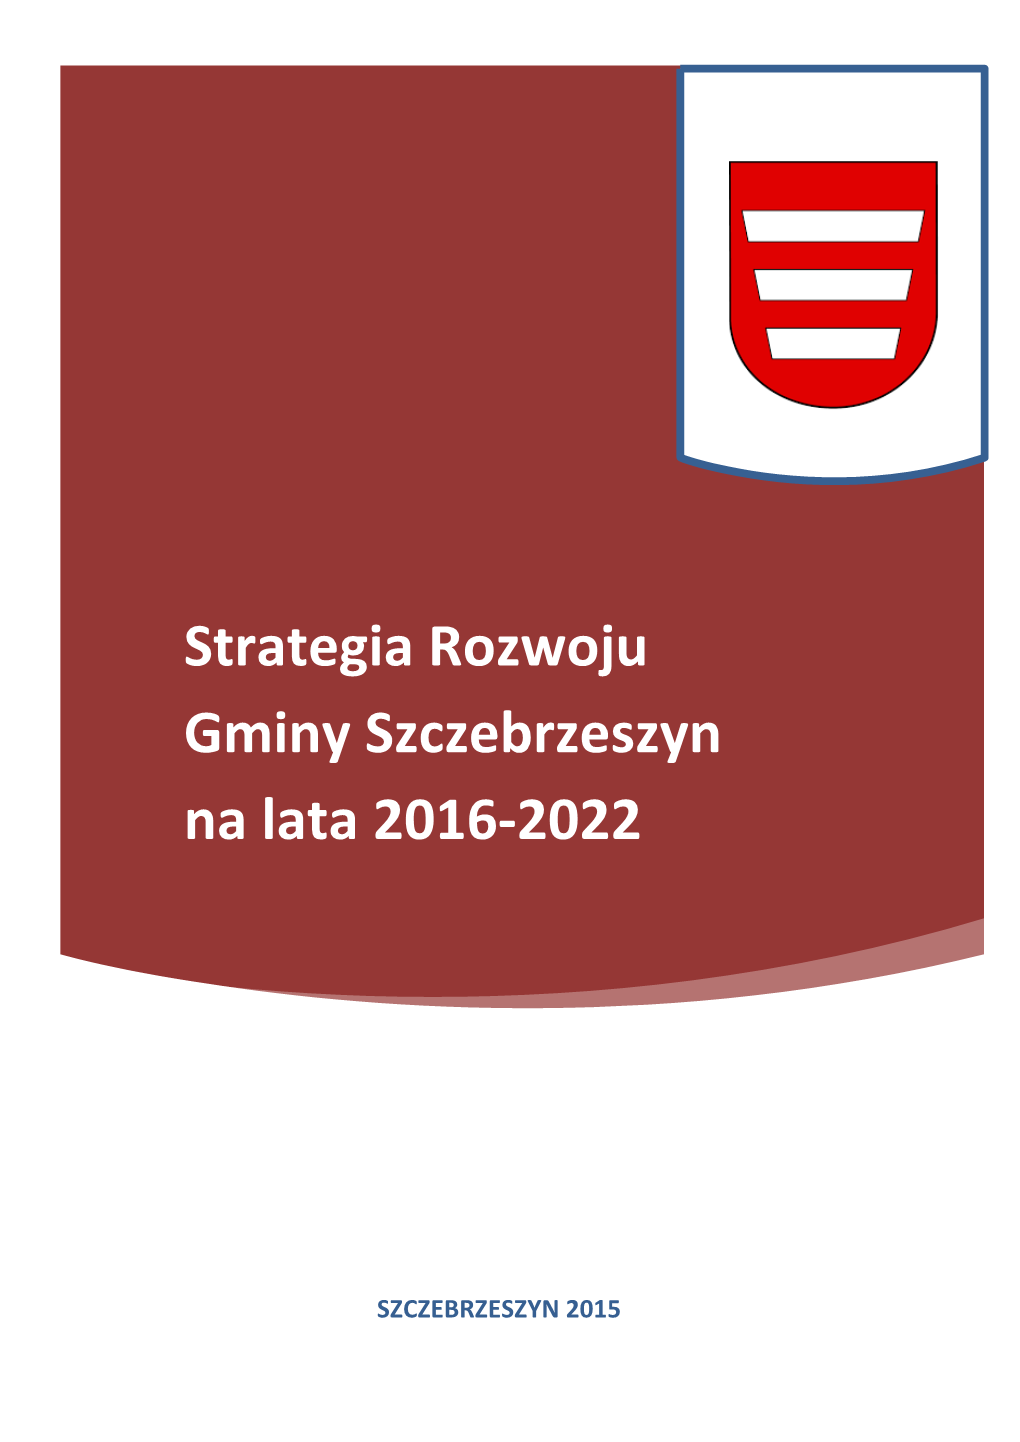 Strategia Rozwoju Gminy Szczebrzeszyn Na Lata 2016-2022